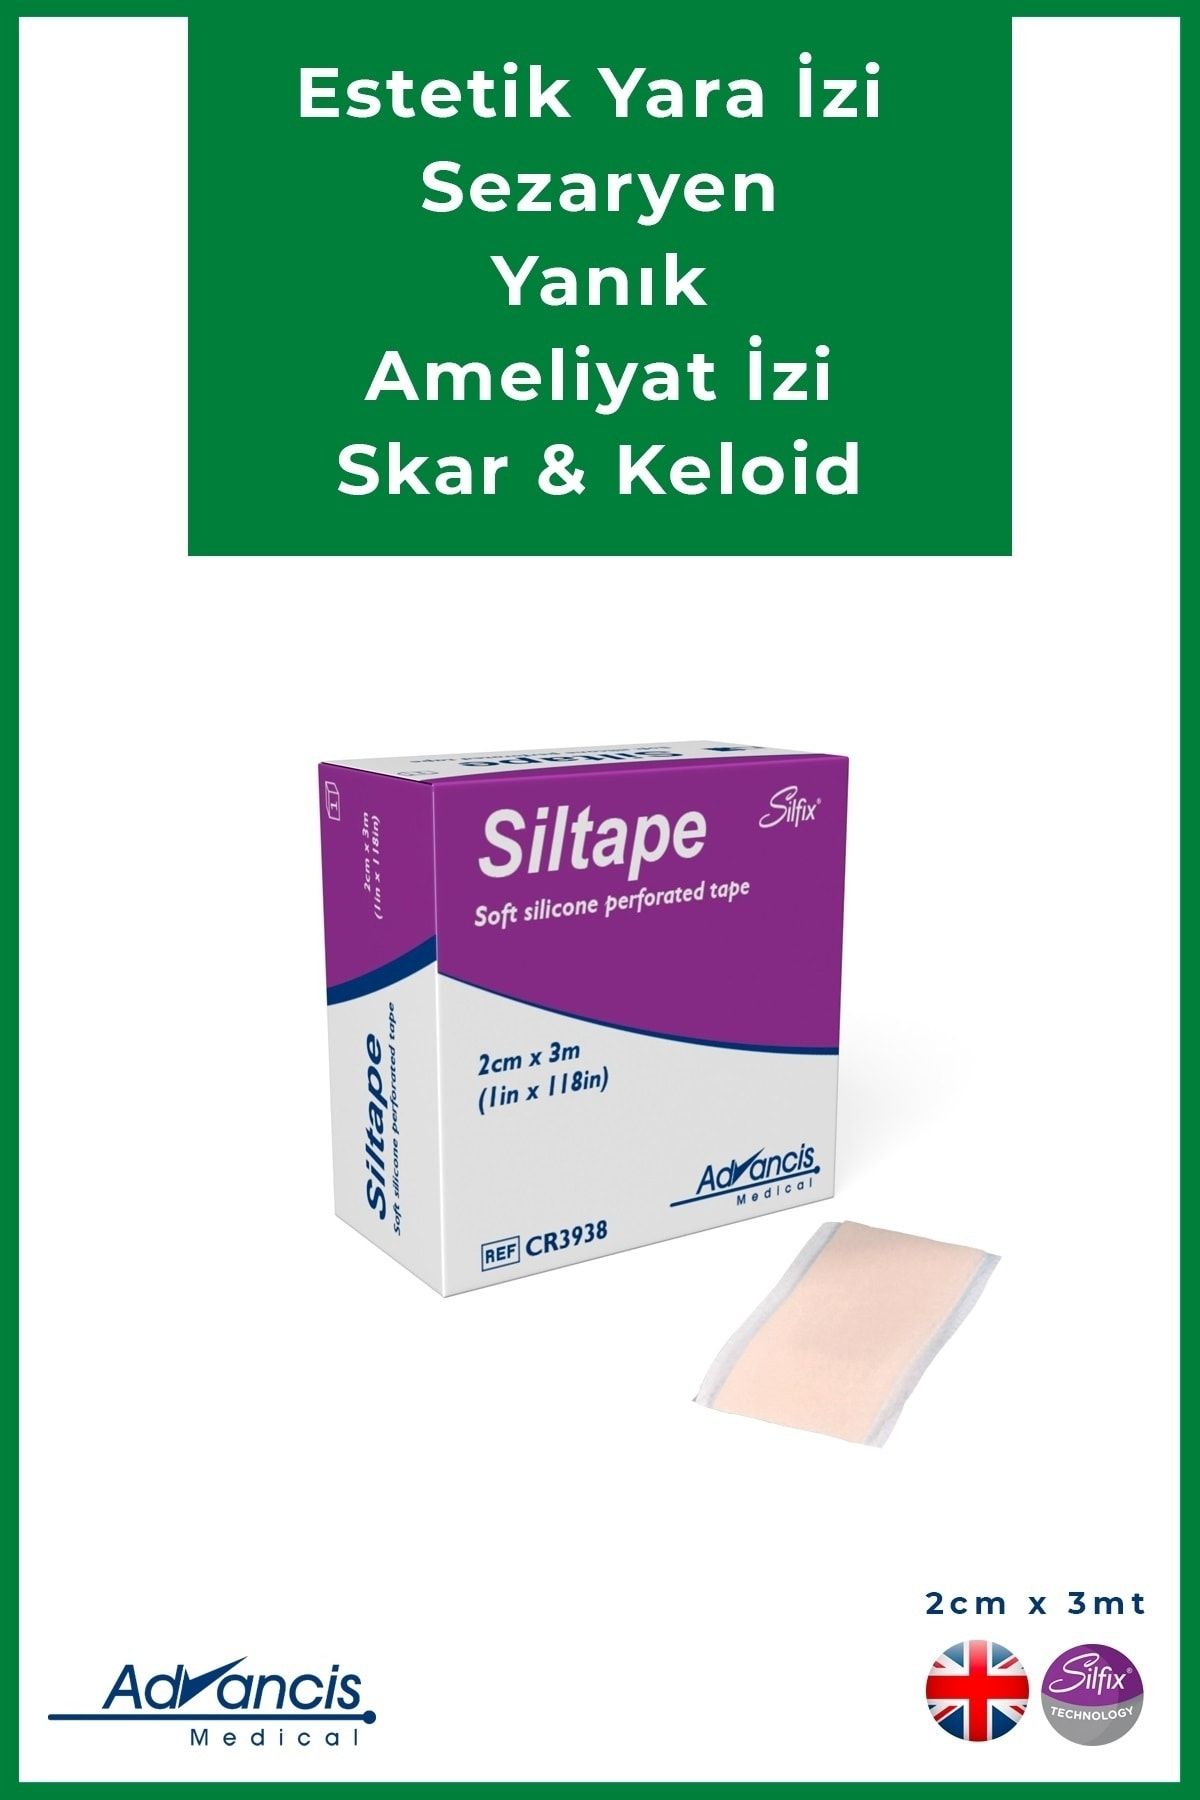 Advancis Medical UK Siltape Soft Silikon Bant Yara Izi - Dikiş Izi - Sezaryen - Yanık - Estetik 2cm X 3mt